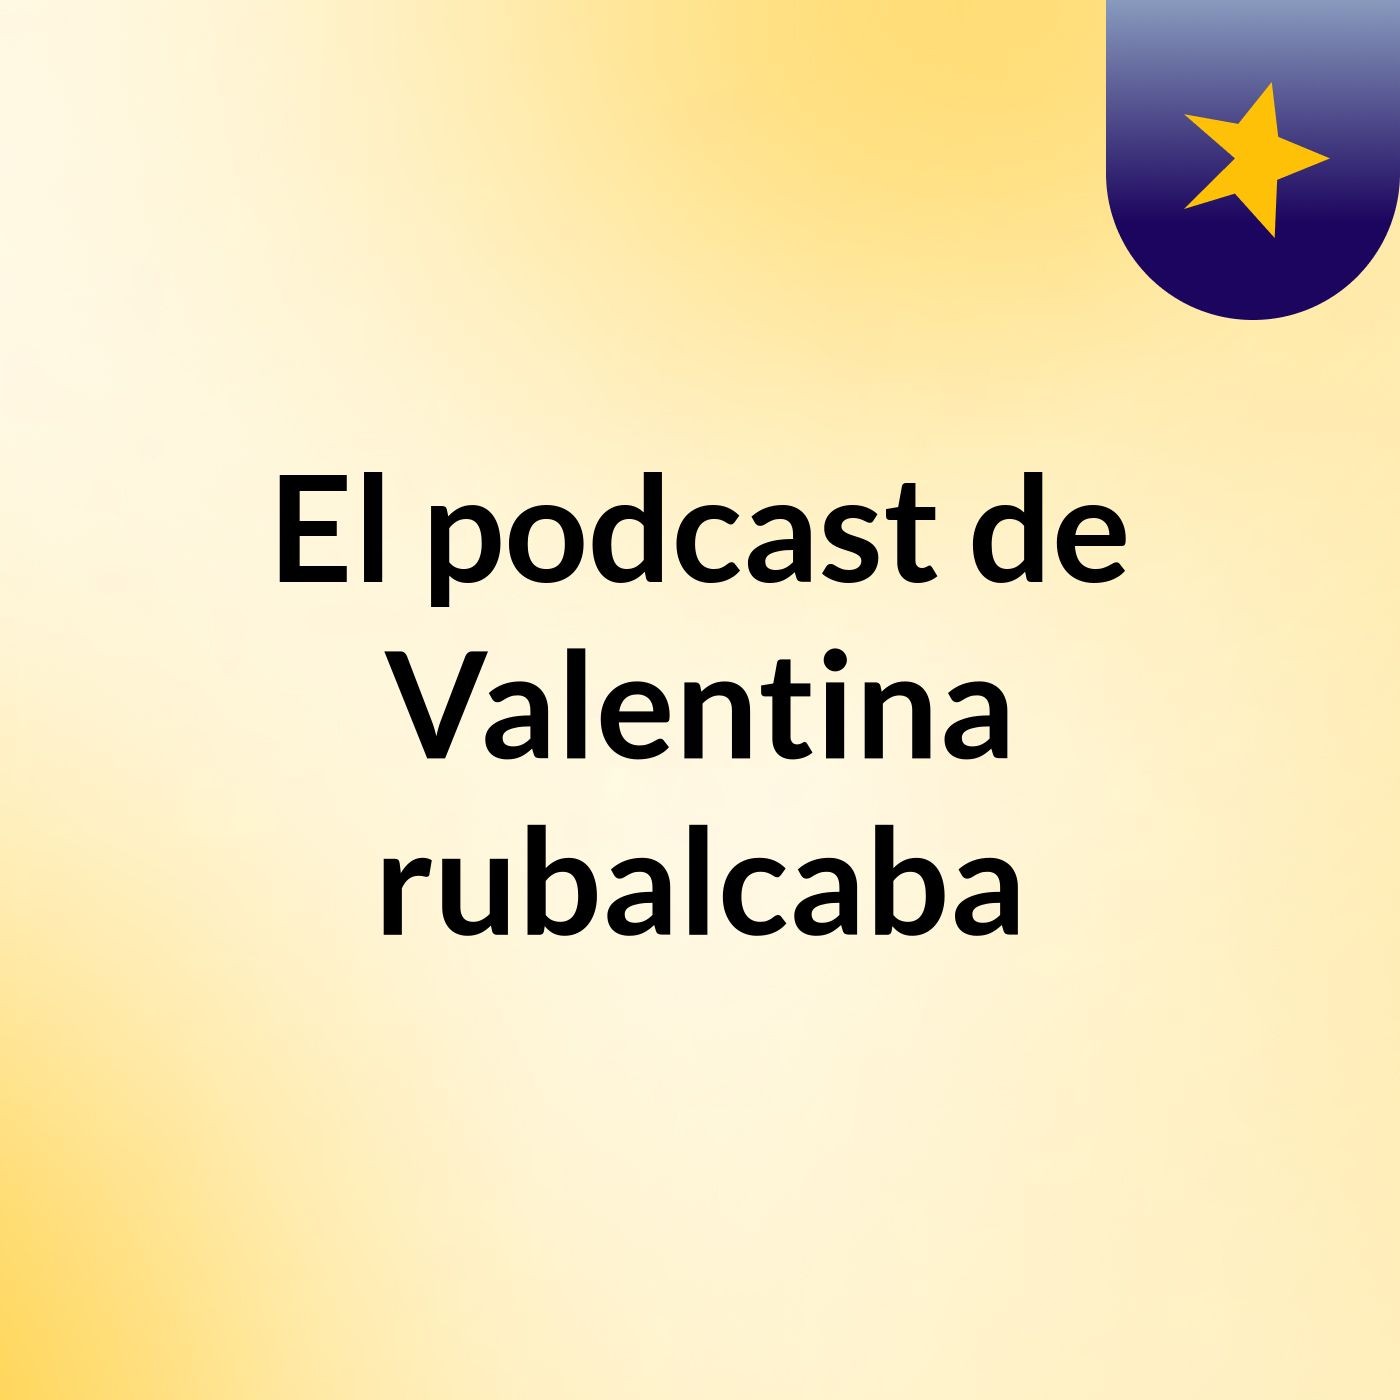 El podcast de Valentina rubalcaba